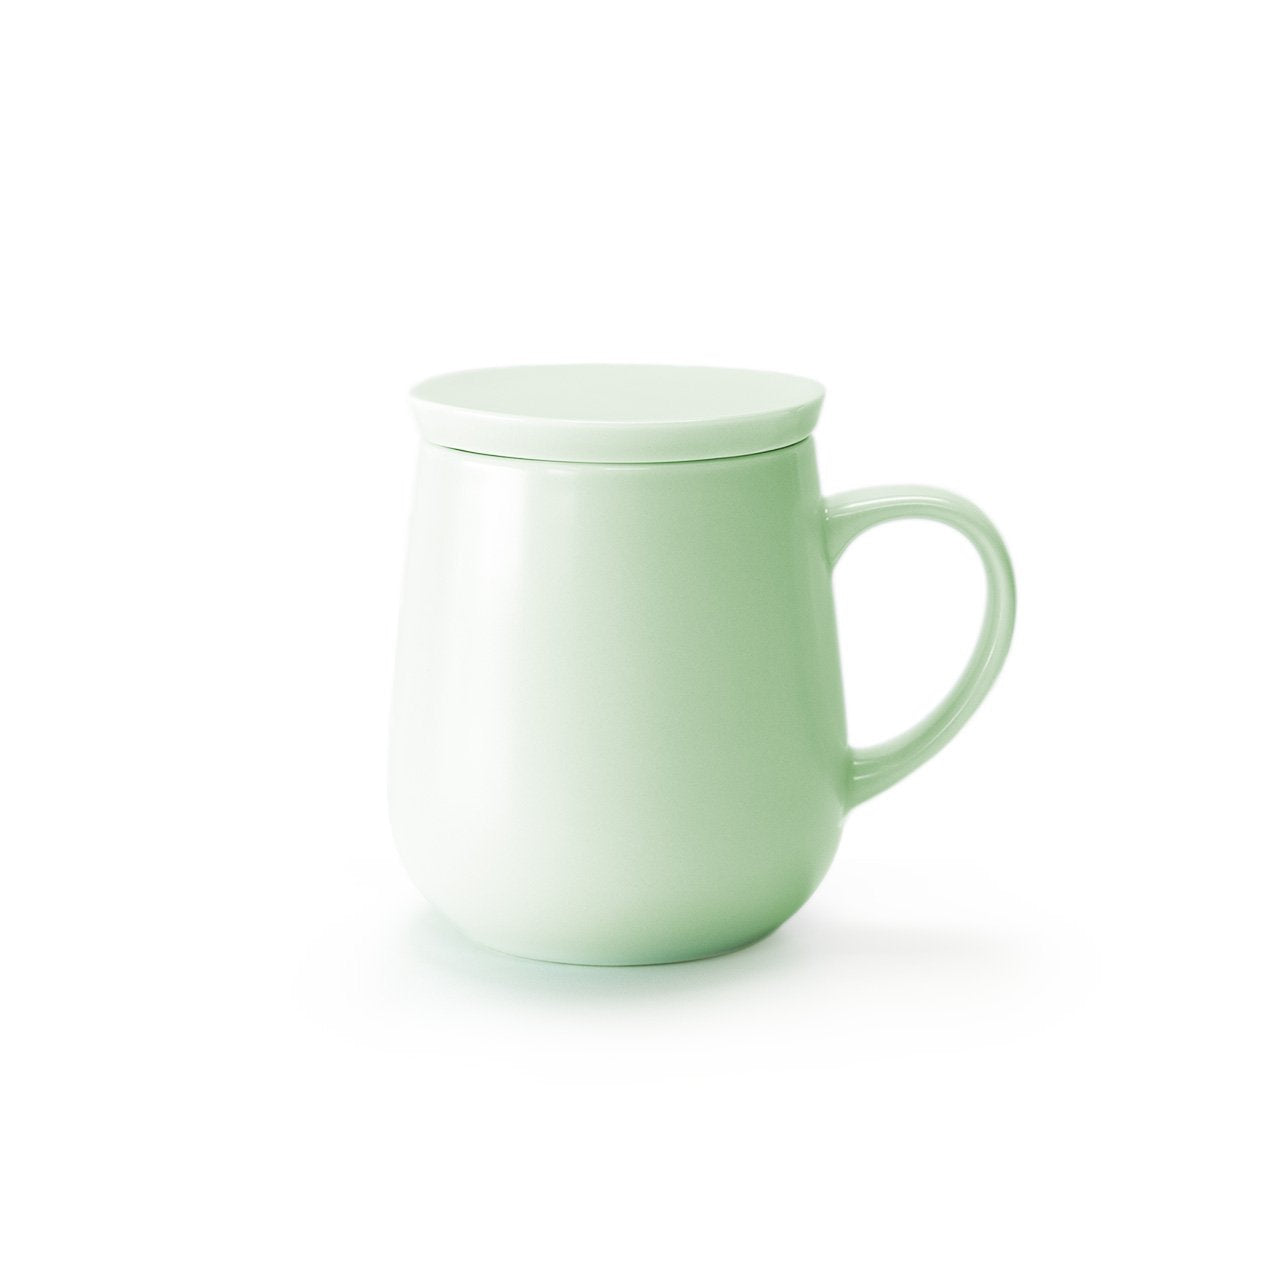 Small green mug with lid